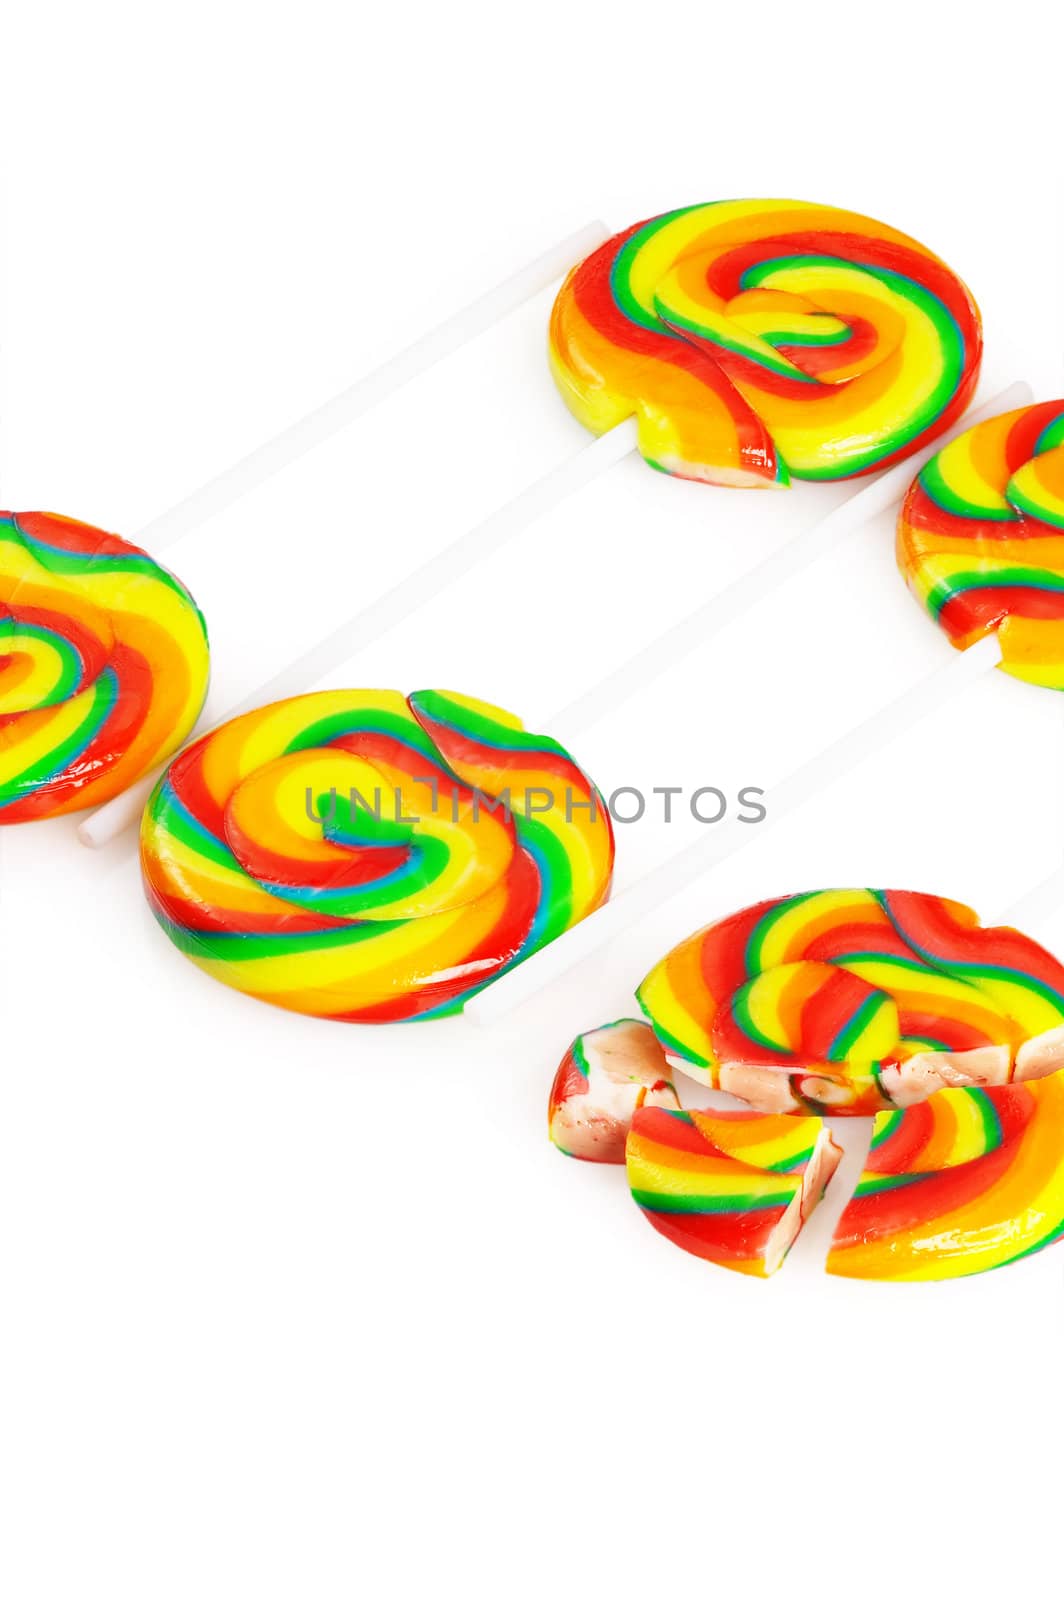 lollipops by keko64